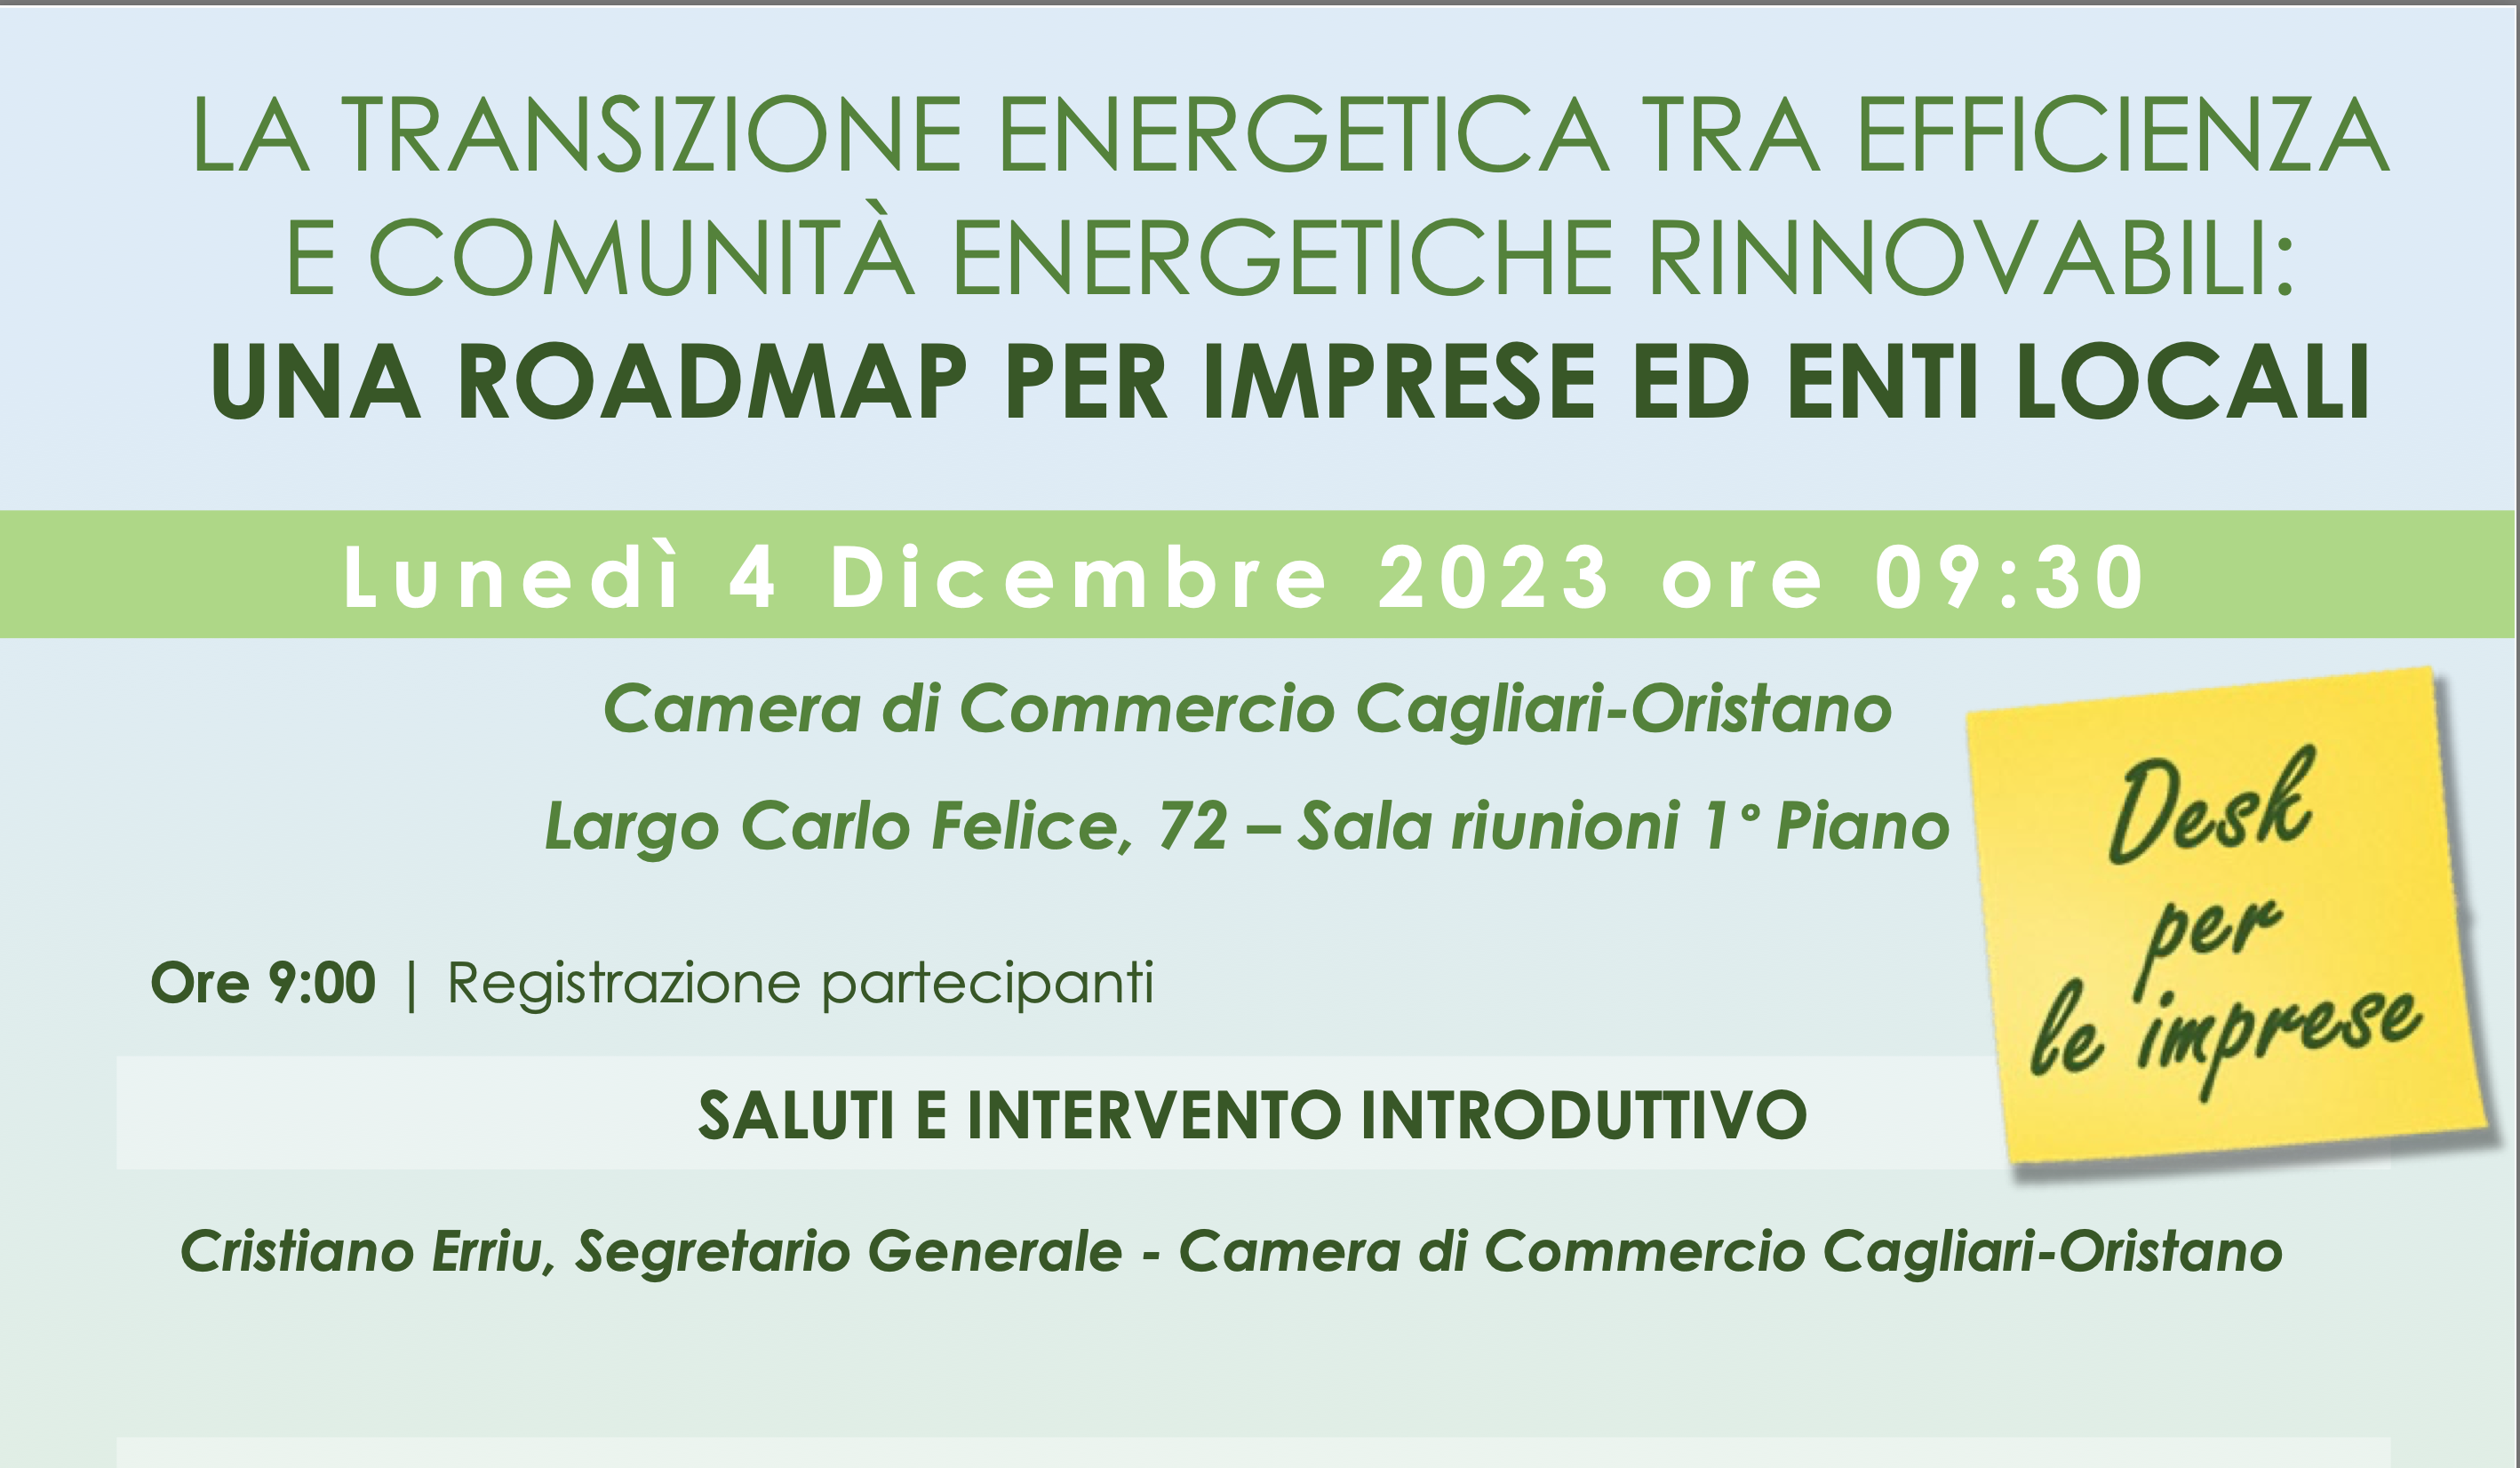 Transizione energetica per le imprese, il 4 dicembre a Cagliari convegno della Camera di Commercio Ca-Or